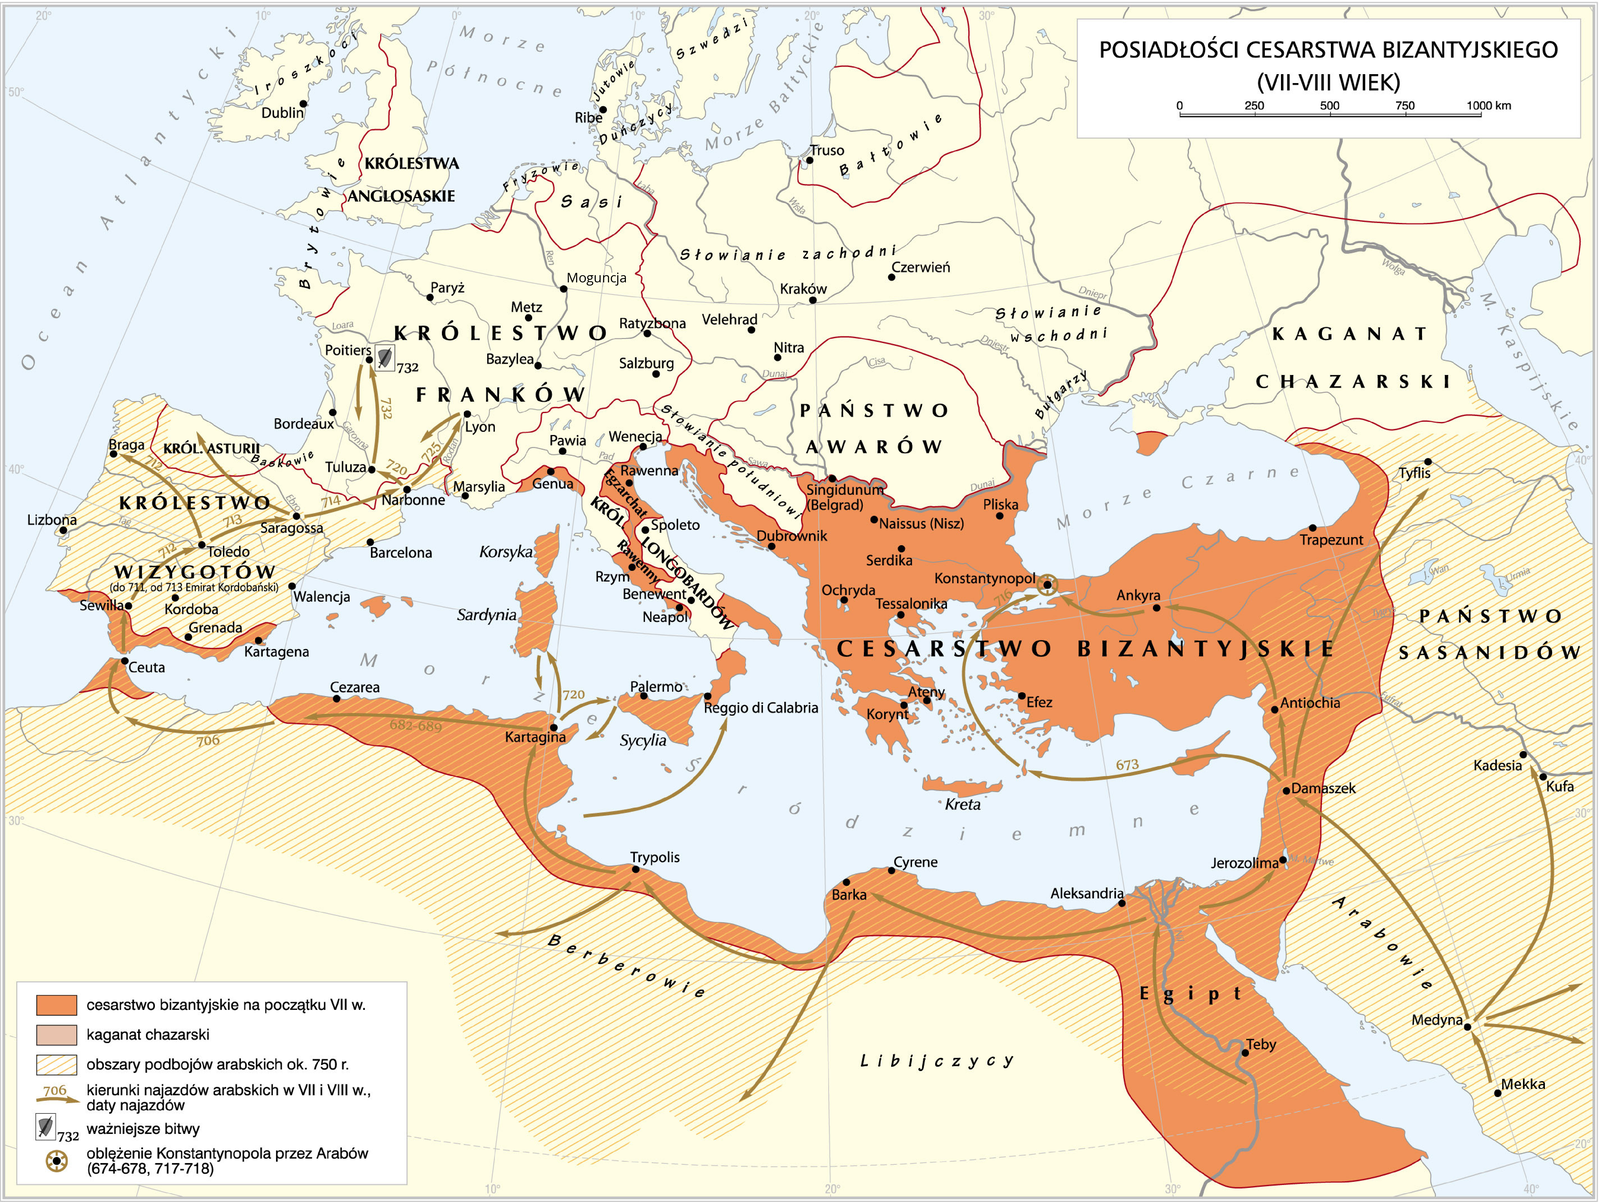 Mapa przedstawia Posiadłości Cesarstwa Bizantyjskiego (VII‑VIII wiek). Cesarstwo bizantyjskie na początku VII wieku zajmowało cały teren nabrzeża morza śródziemnego za wyjątkiem wschodniej Hiszpanii i Francji. Obszary podbojów arabskich ok 750 rok teren Hiszpanii, wybrzeże północnej Afryki, Syria, Irak, Iran, północ Turcji. Kierunki najazdów arabskich w VII i VIII wieku w 720 r z Kartaginy na Sycylię, Sardynię. W roku 682- 689 z Kartaginy na Cezareę, w 706 roku przez Ceuta, Sewilla, 712 rok Toledo, 7713 Sargassa, 712 Braga, 714 Narbonne, 720 Tuluza, 725 Lyon, 732 Poitiers.  Z terenu obecnej Arabii Saudyjskiej miejscowości  Mekka przez Medynę, Damaszek, w 673 roku Konstantynopol. Z Damaszku na wschód do Tyflis. Ważniejsze bitwy: 732 rok Poitiers. Oblężenie Konstantynopola przez Arabów 716 rok.